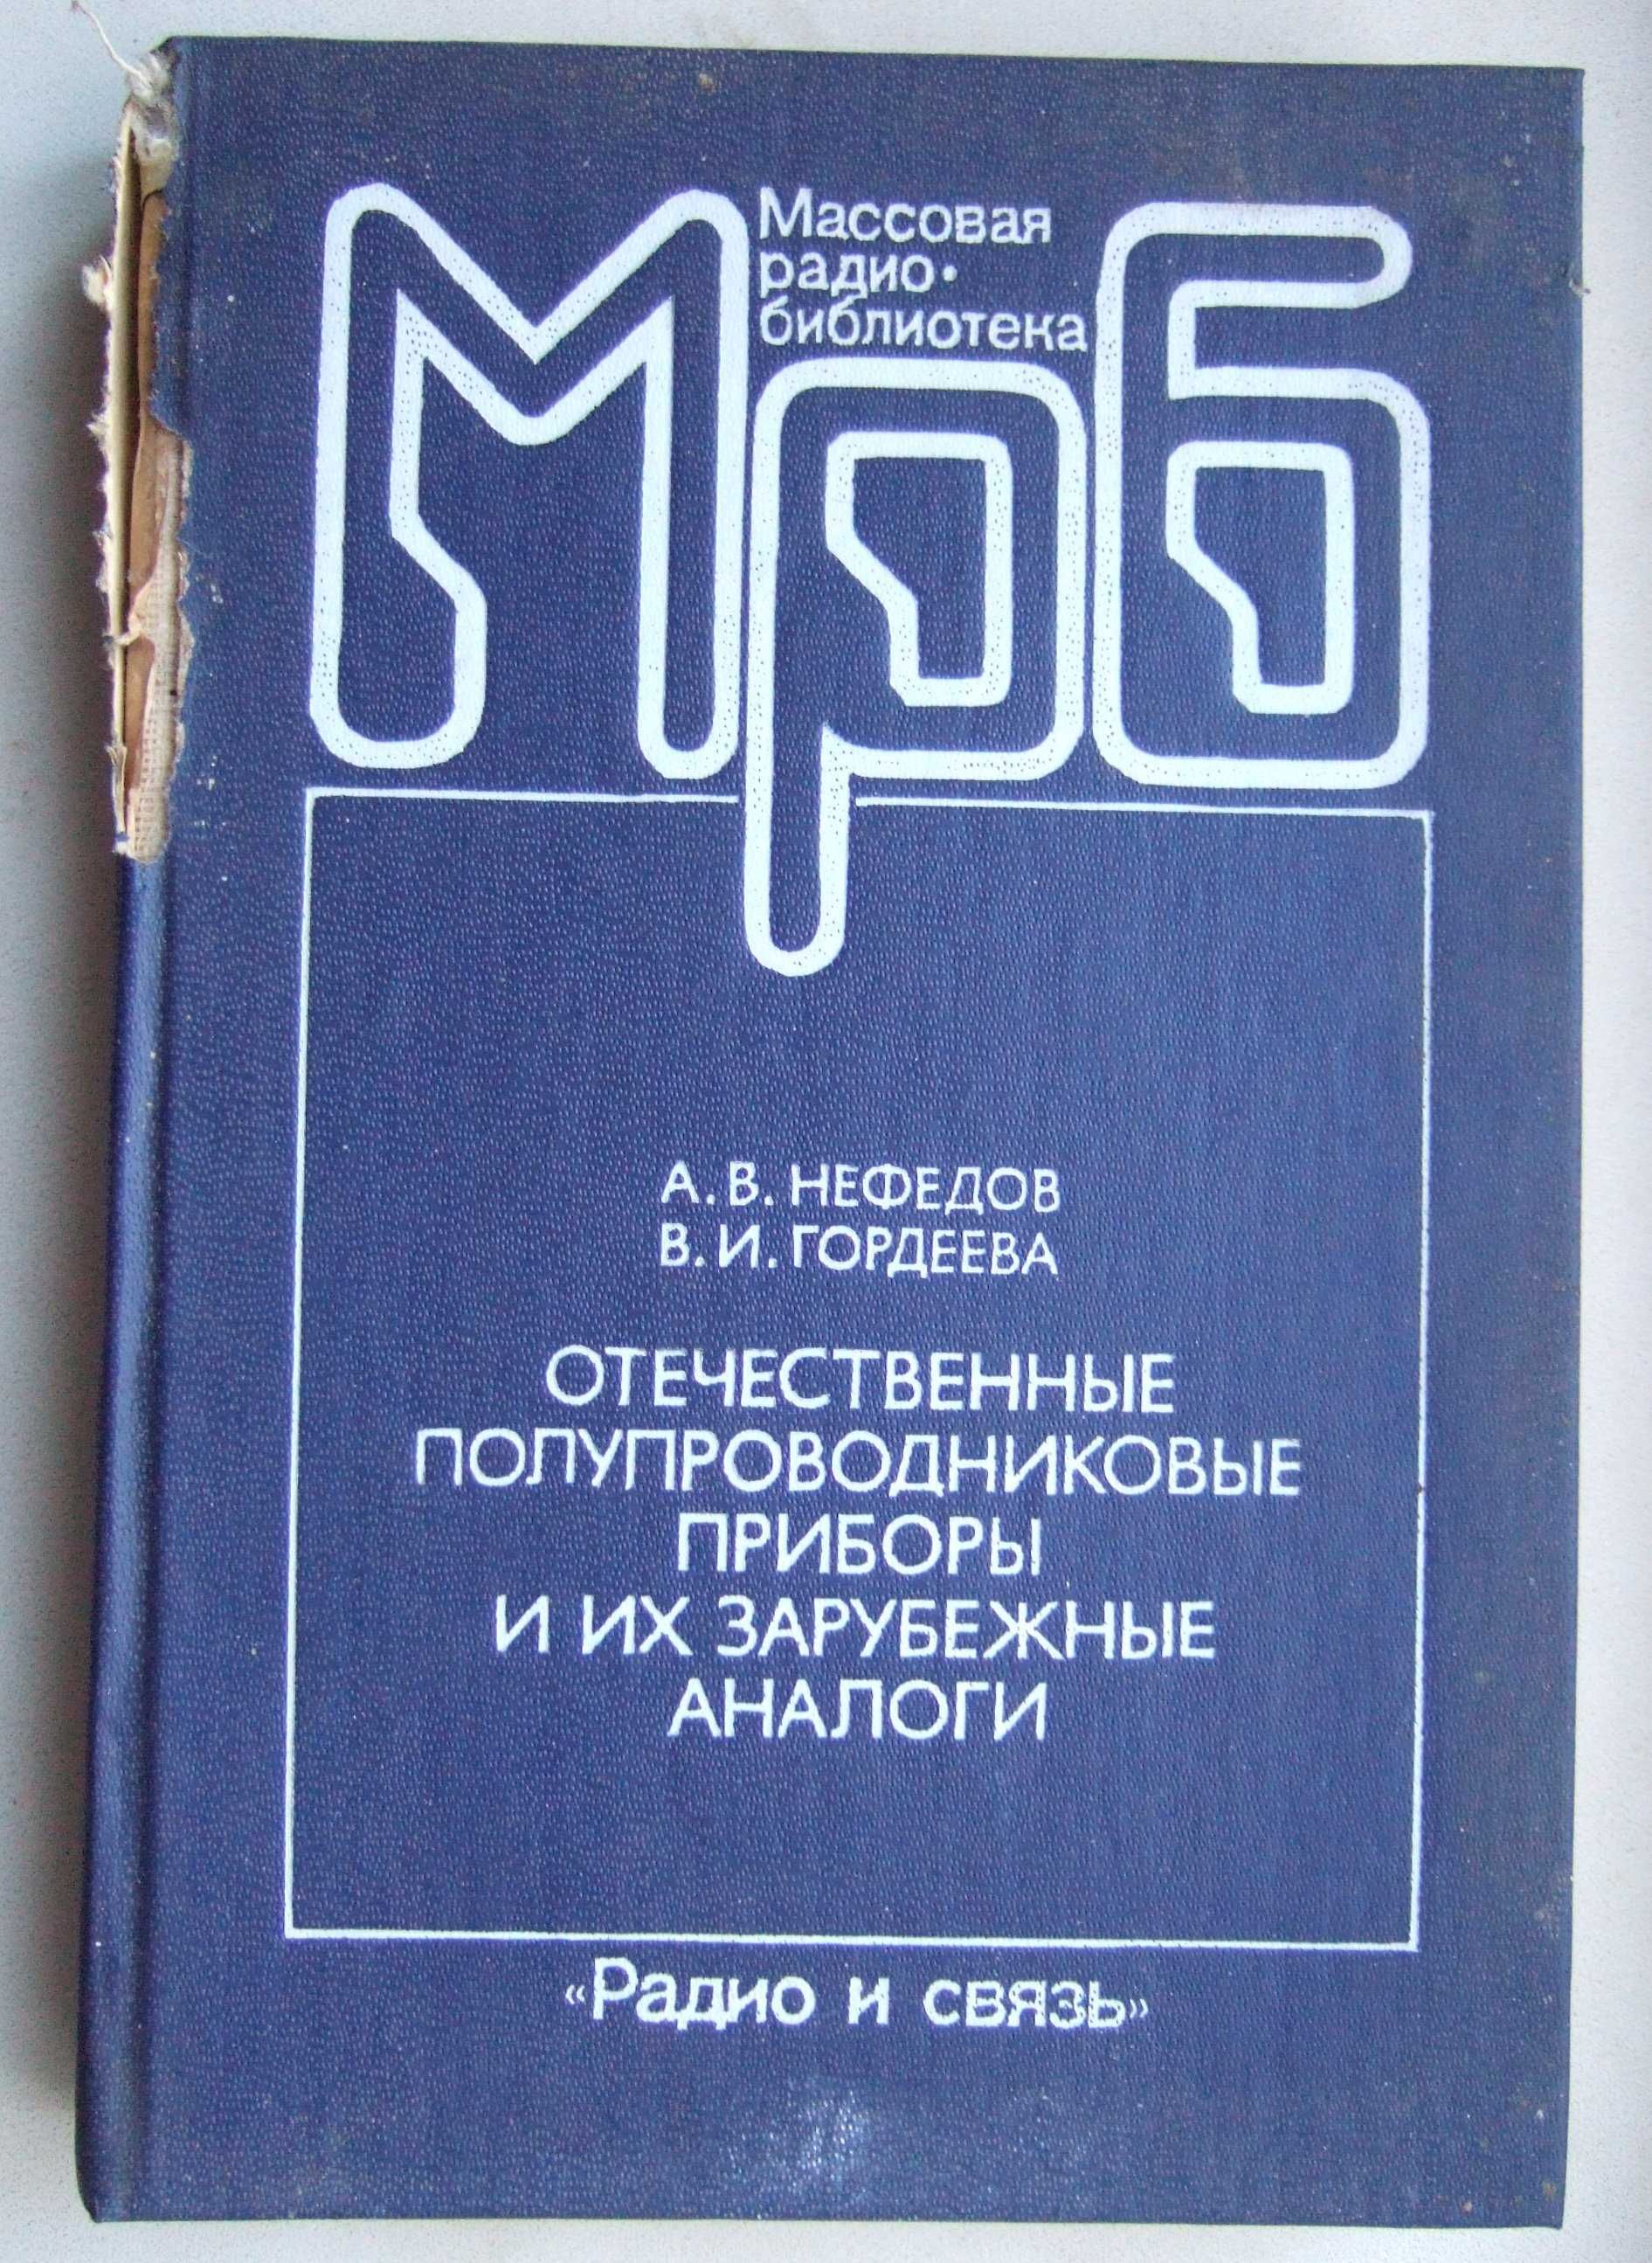 Отечественные полупроводниковые приборы и их зарубежные аналоги1, 1990